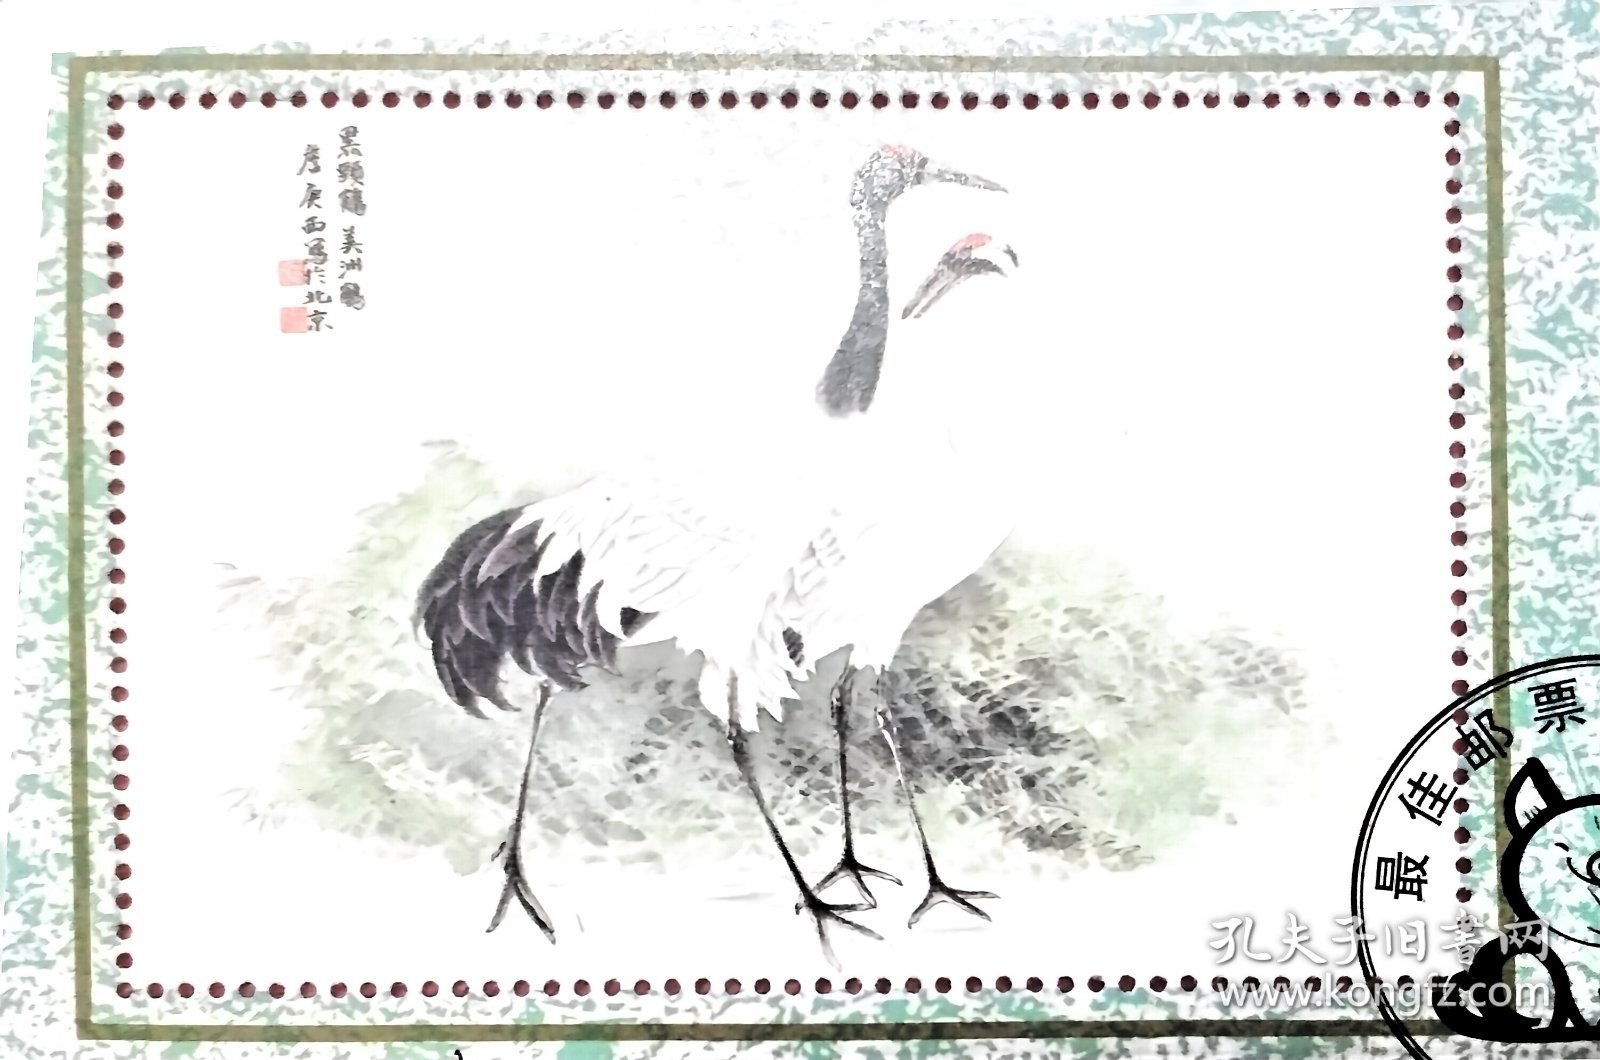 邮票设计家詹庚西亲笔签名94年优秀邮票评选颁奖纪念张